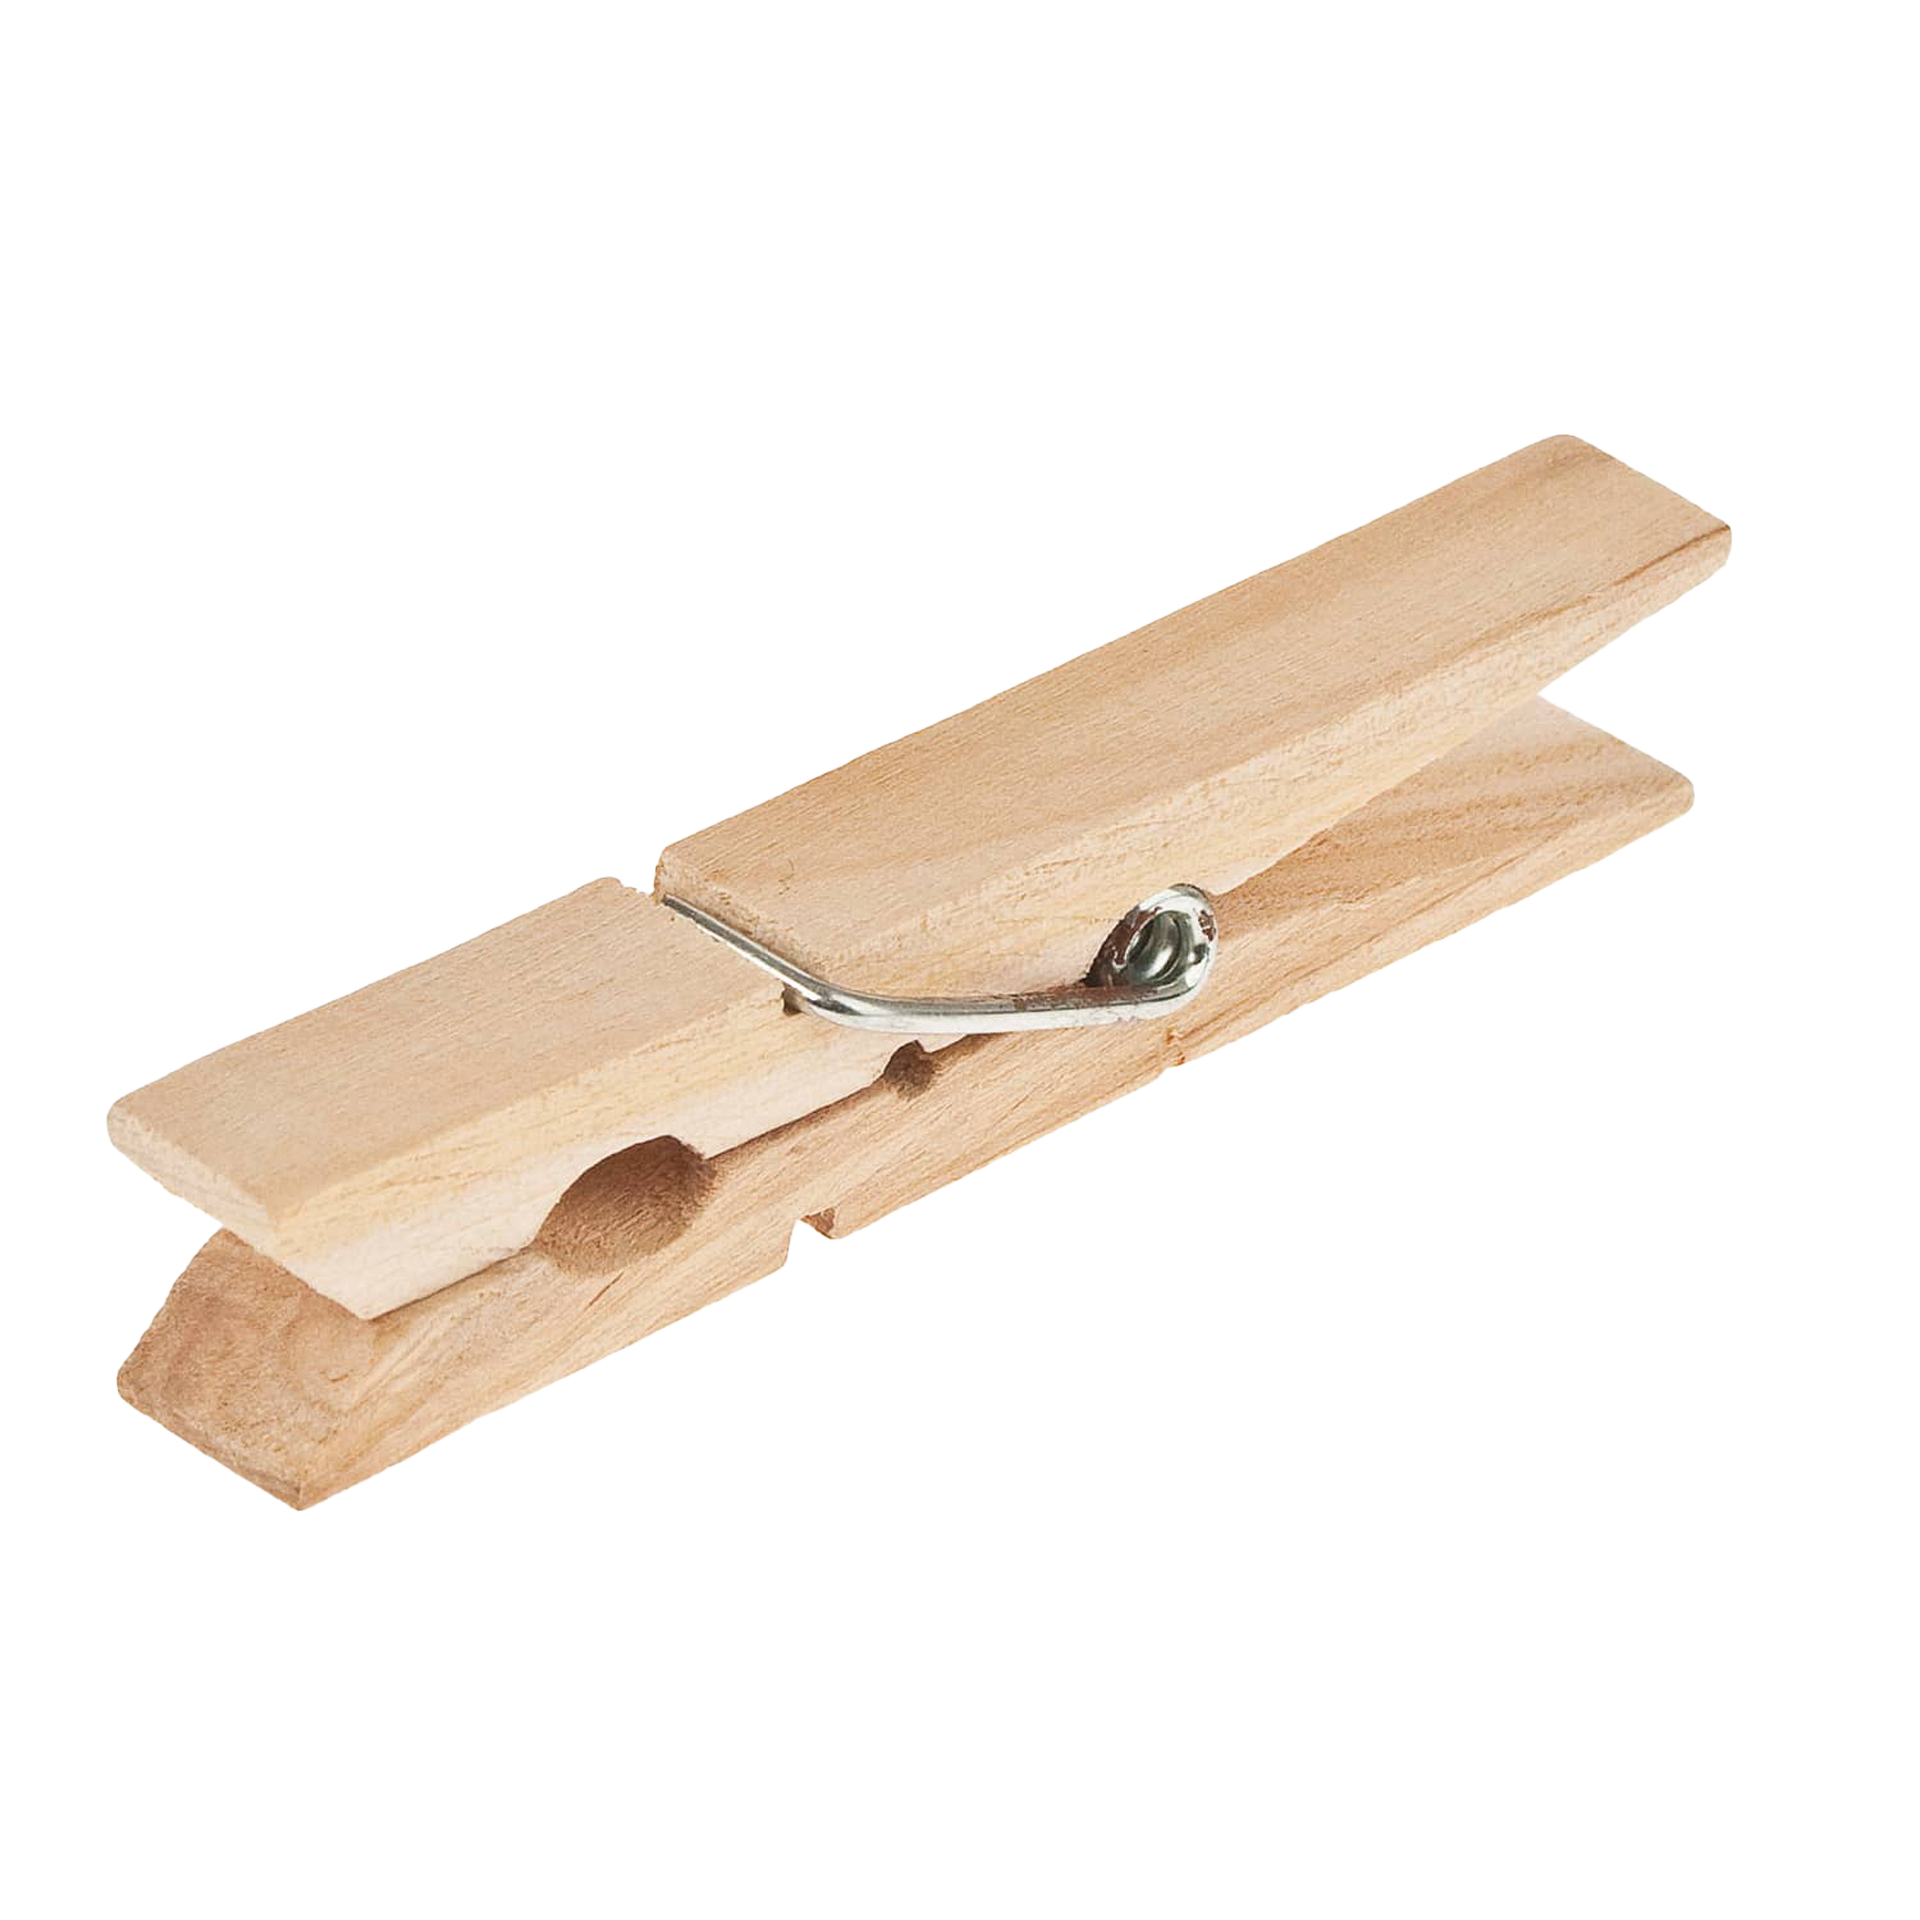 Wäscheklammer in Holz 7,2x1,3x1,1 cm